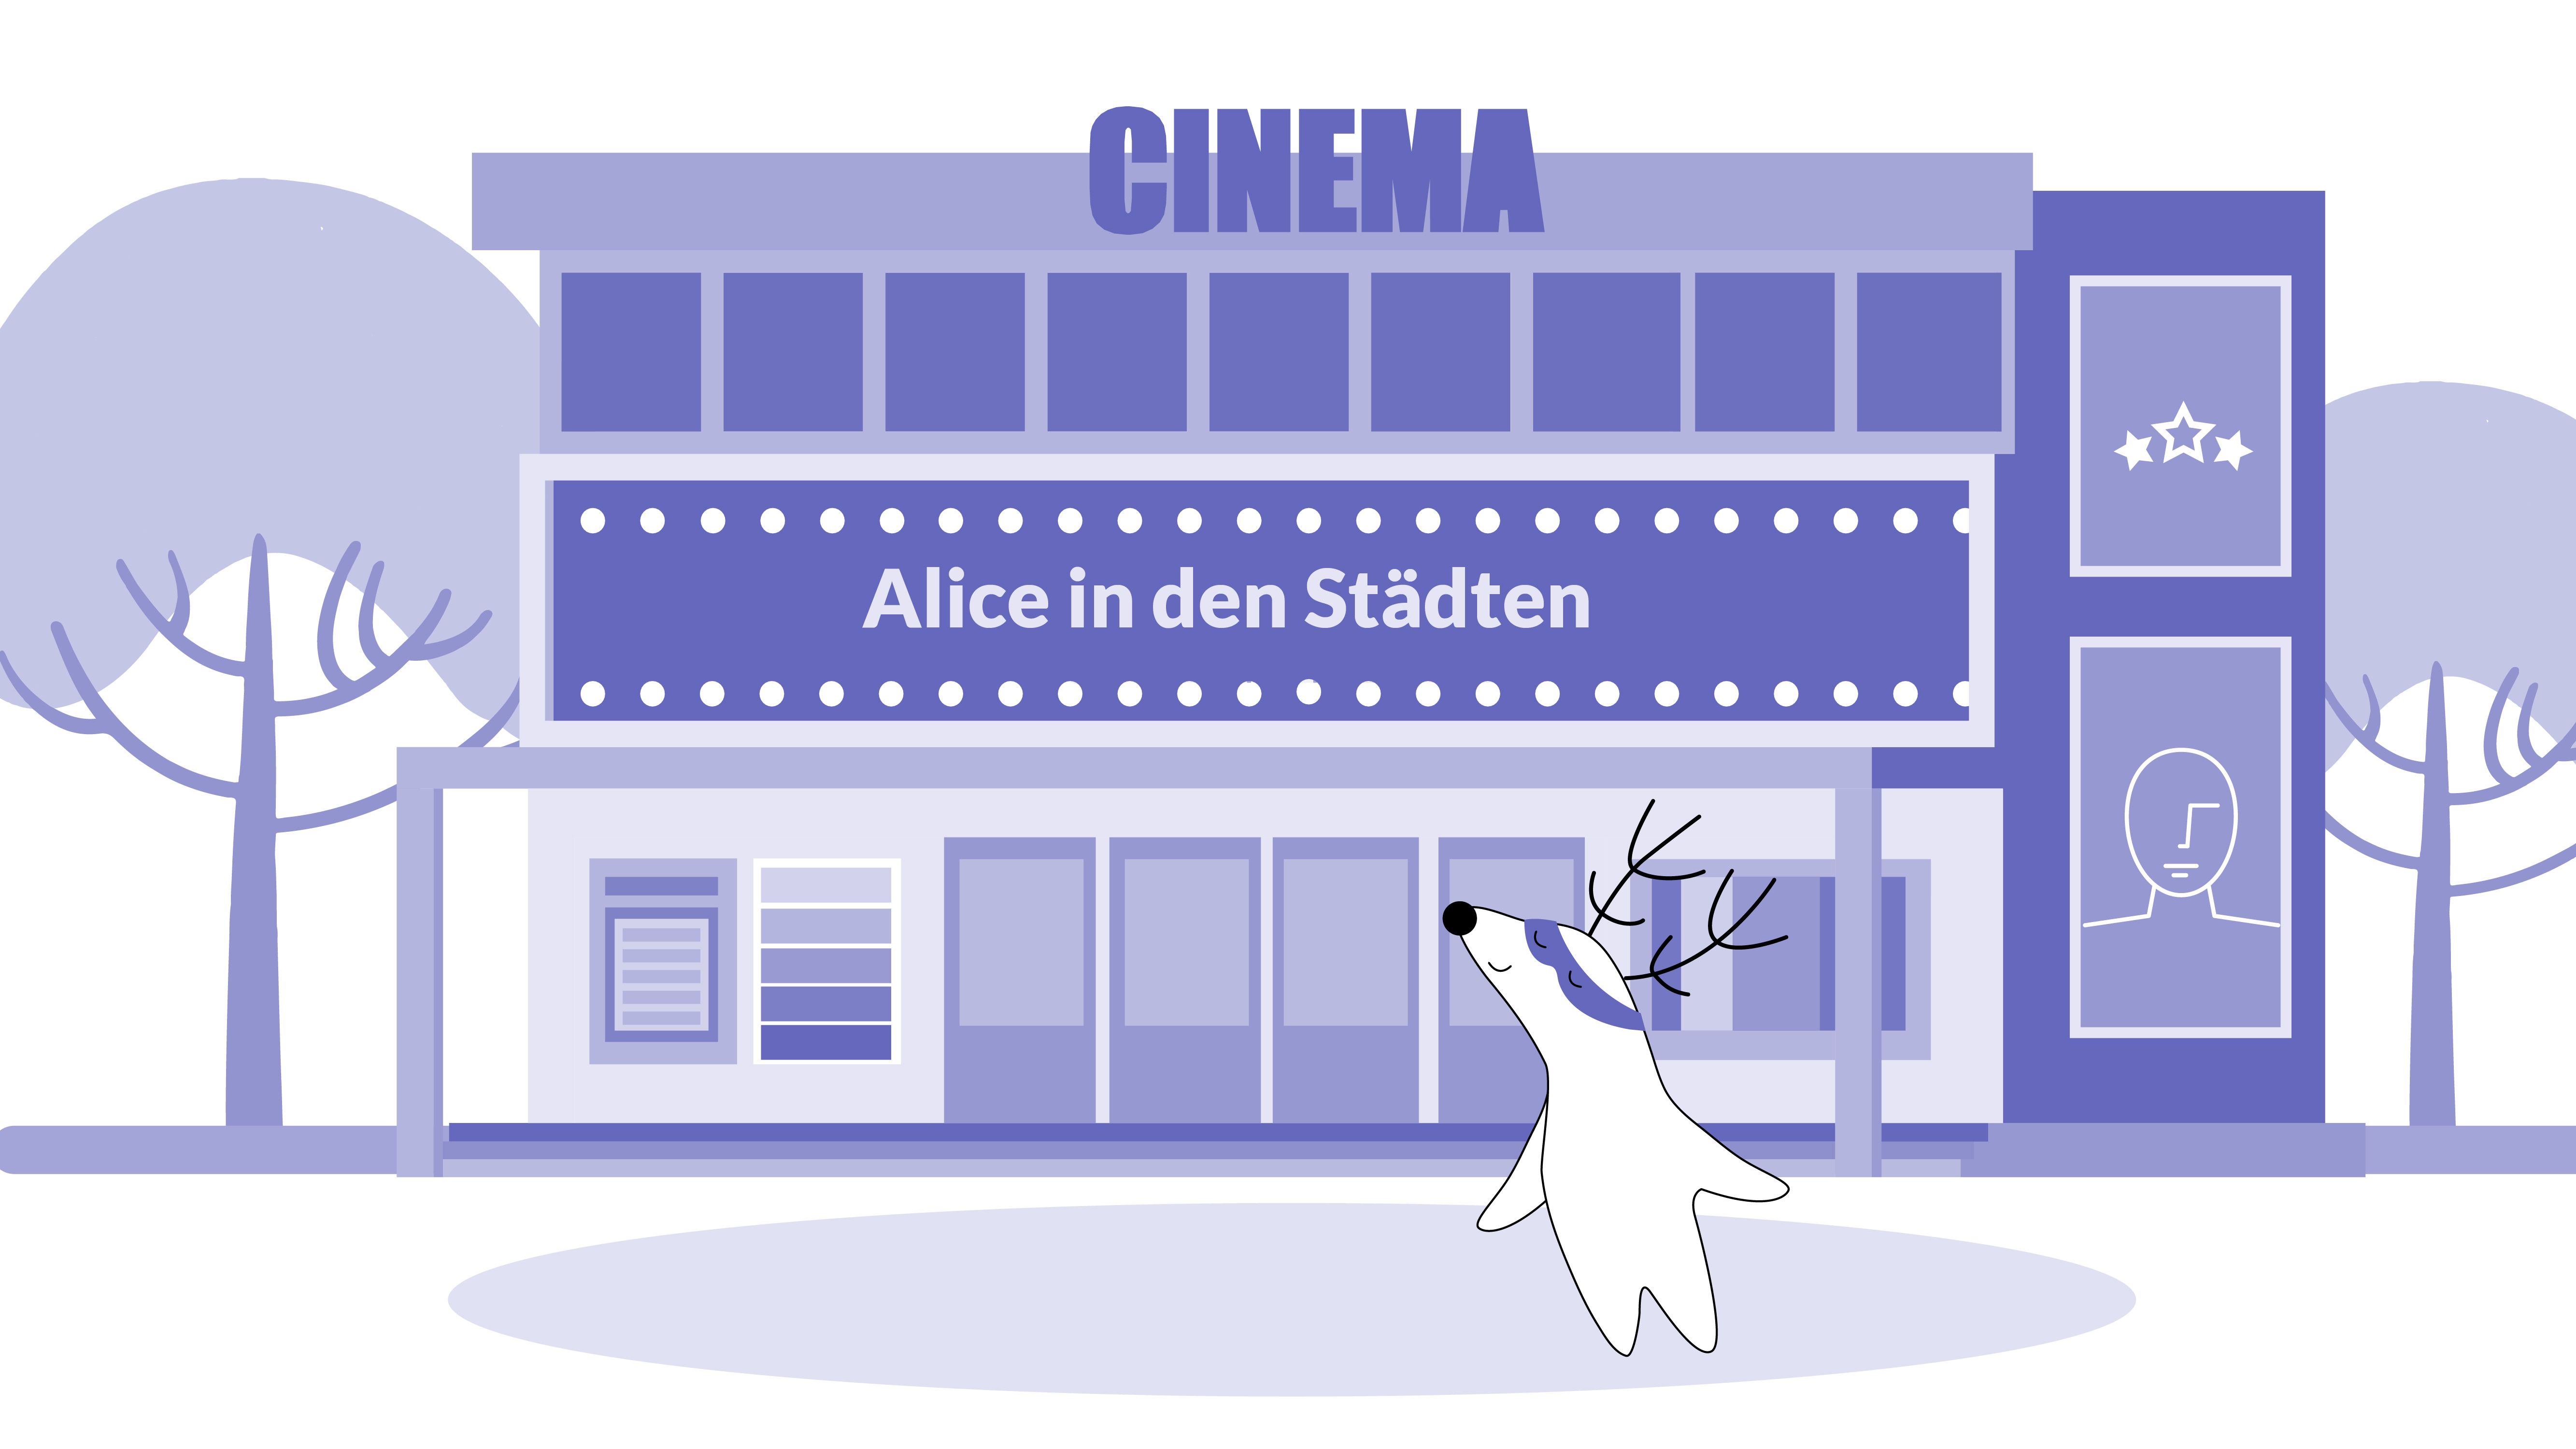 Soren enters the cinema to see Wim Winders’s film Alice in den Städten (Alice in the Cities).